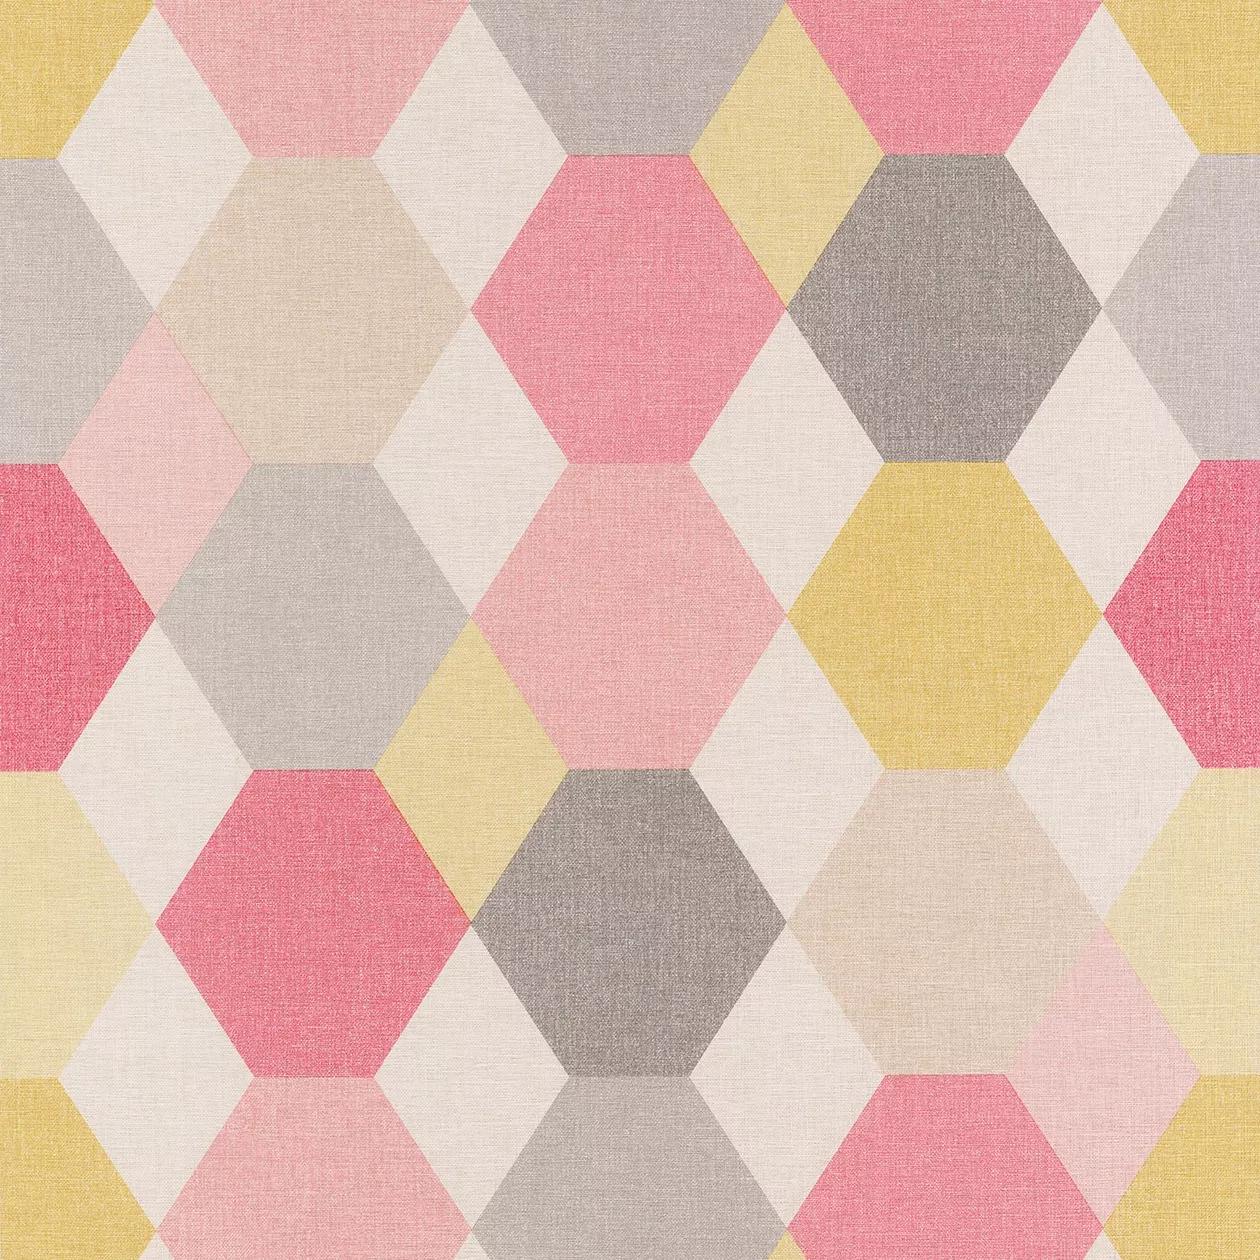 Hexagon mintás retro tapéta, rózsaszín, sárga domináns színekkel